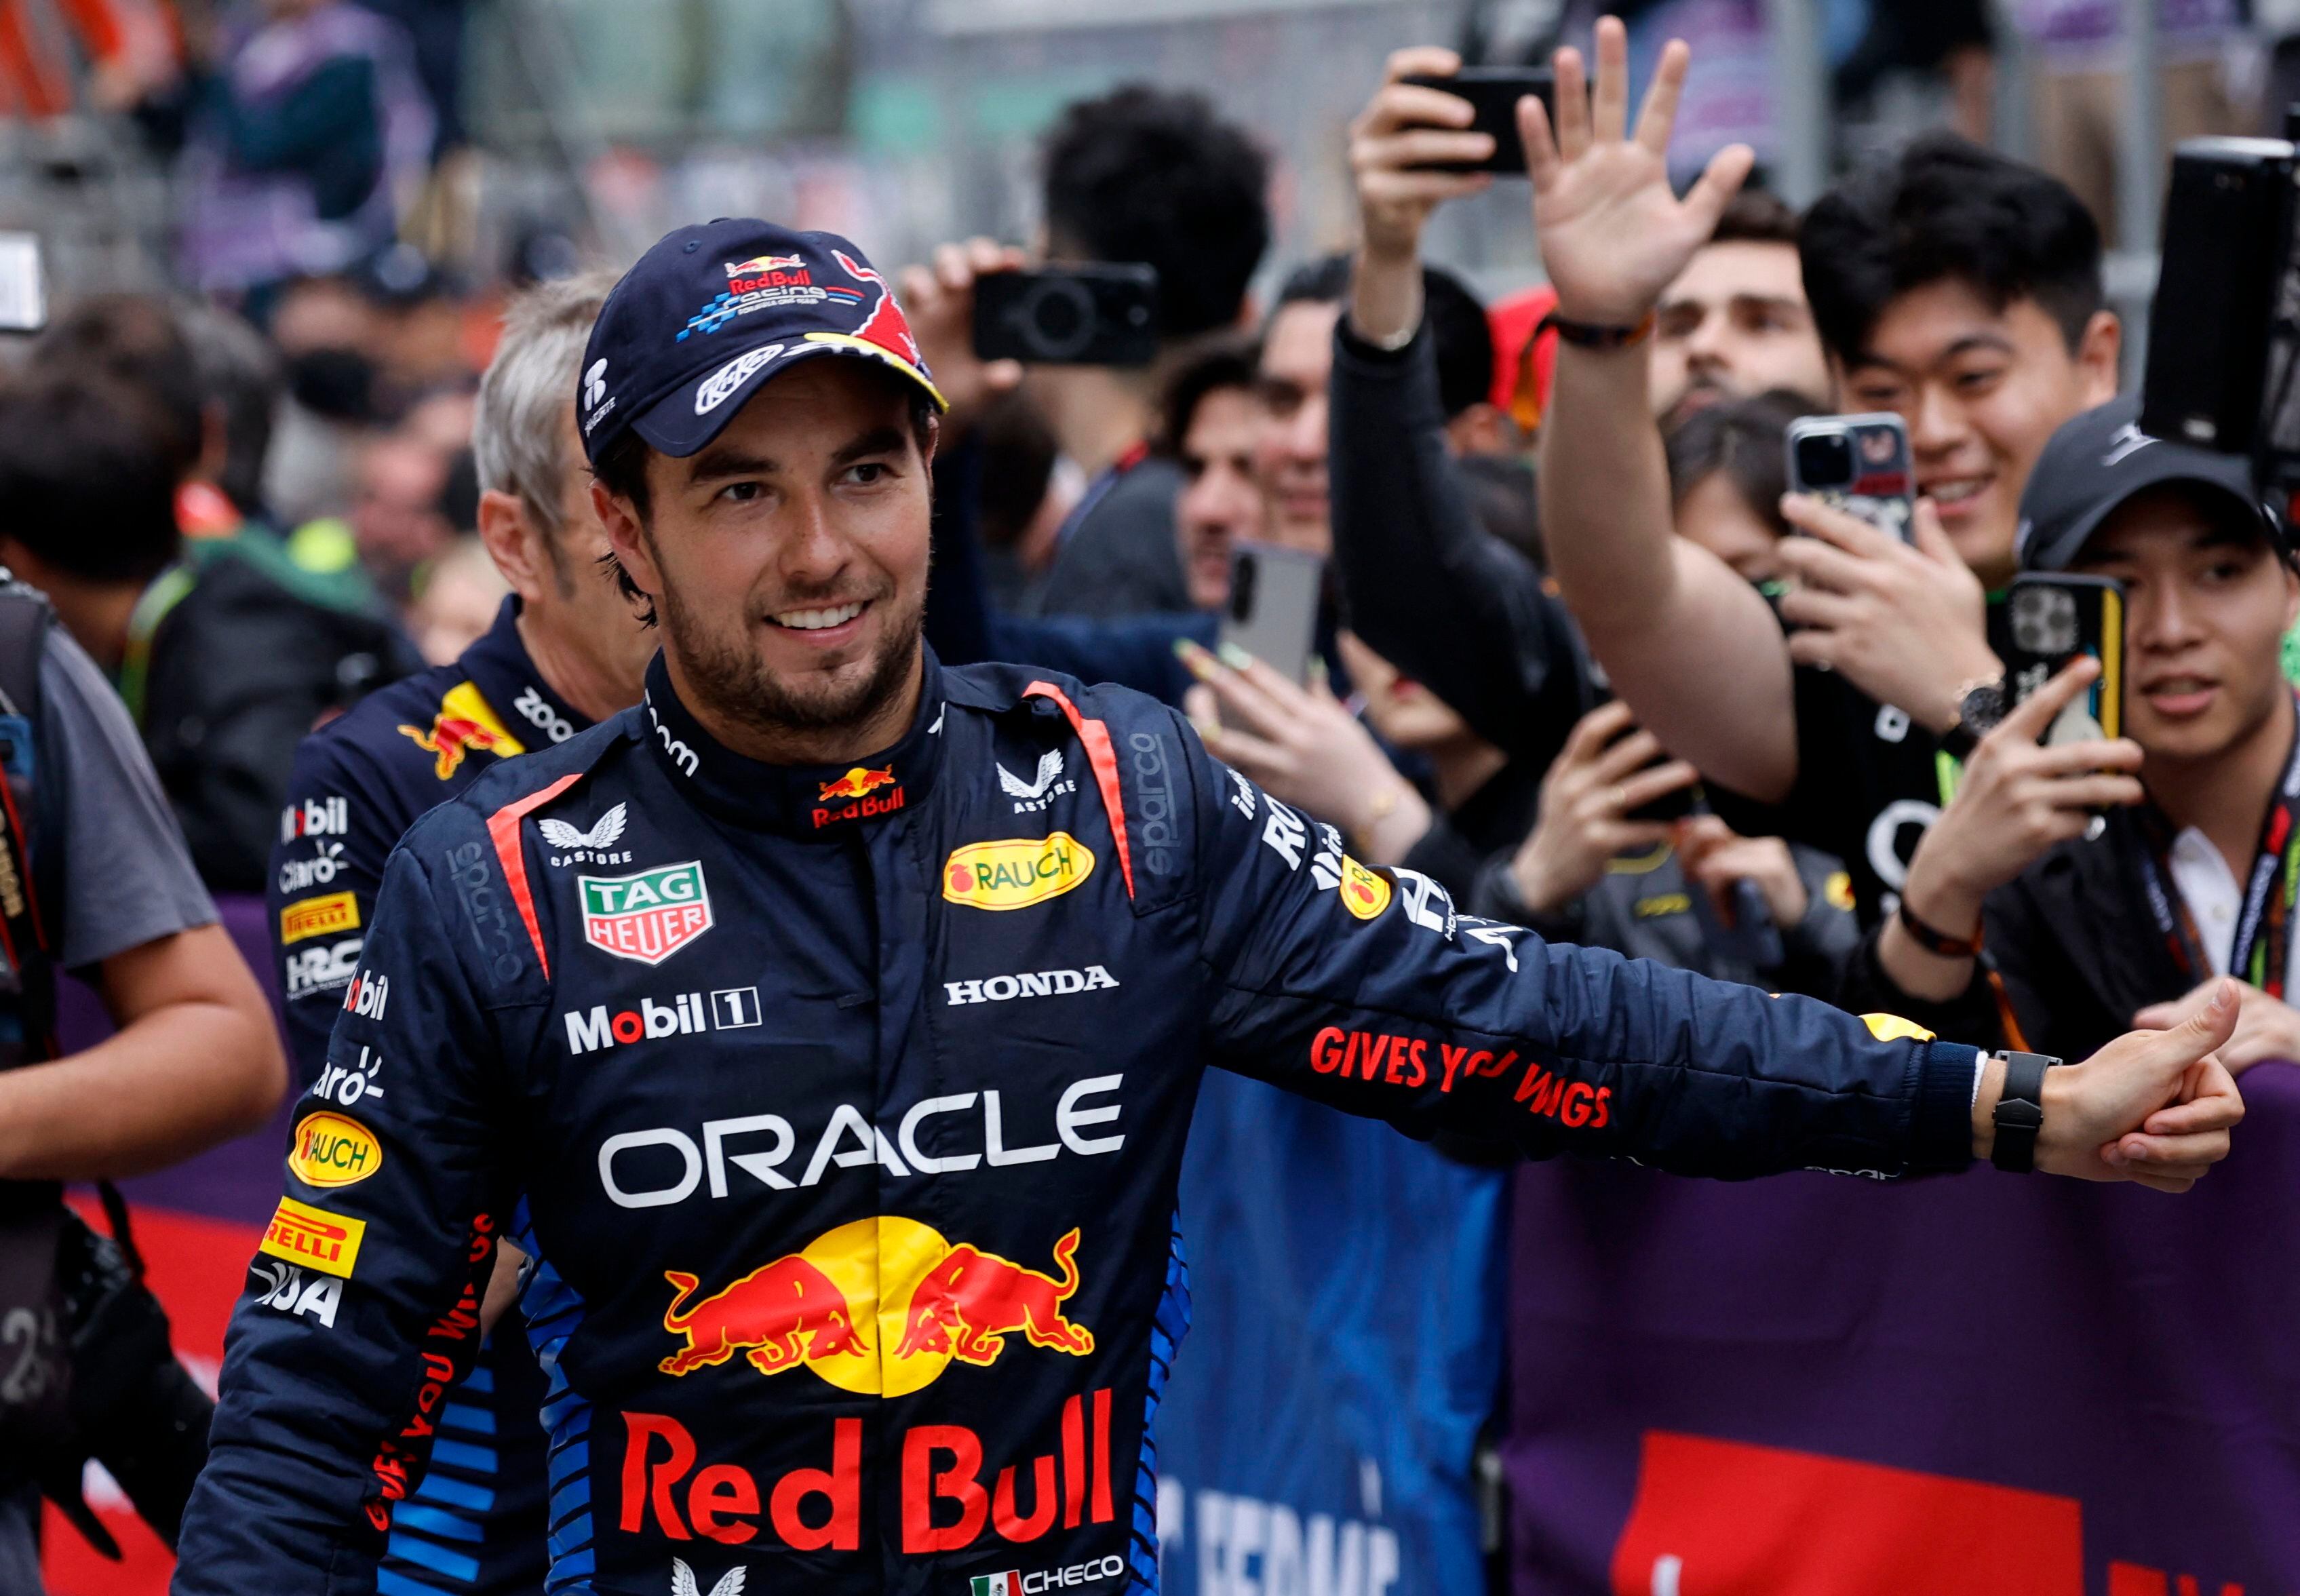 El piloto mexicano, Checo Pérez, adelanta a Daniel Ricciardo en el ranking histórico de puntos (REUTERS/Tyrone Siu)